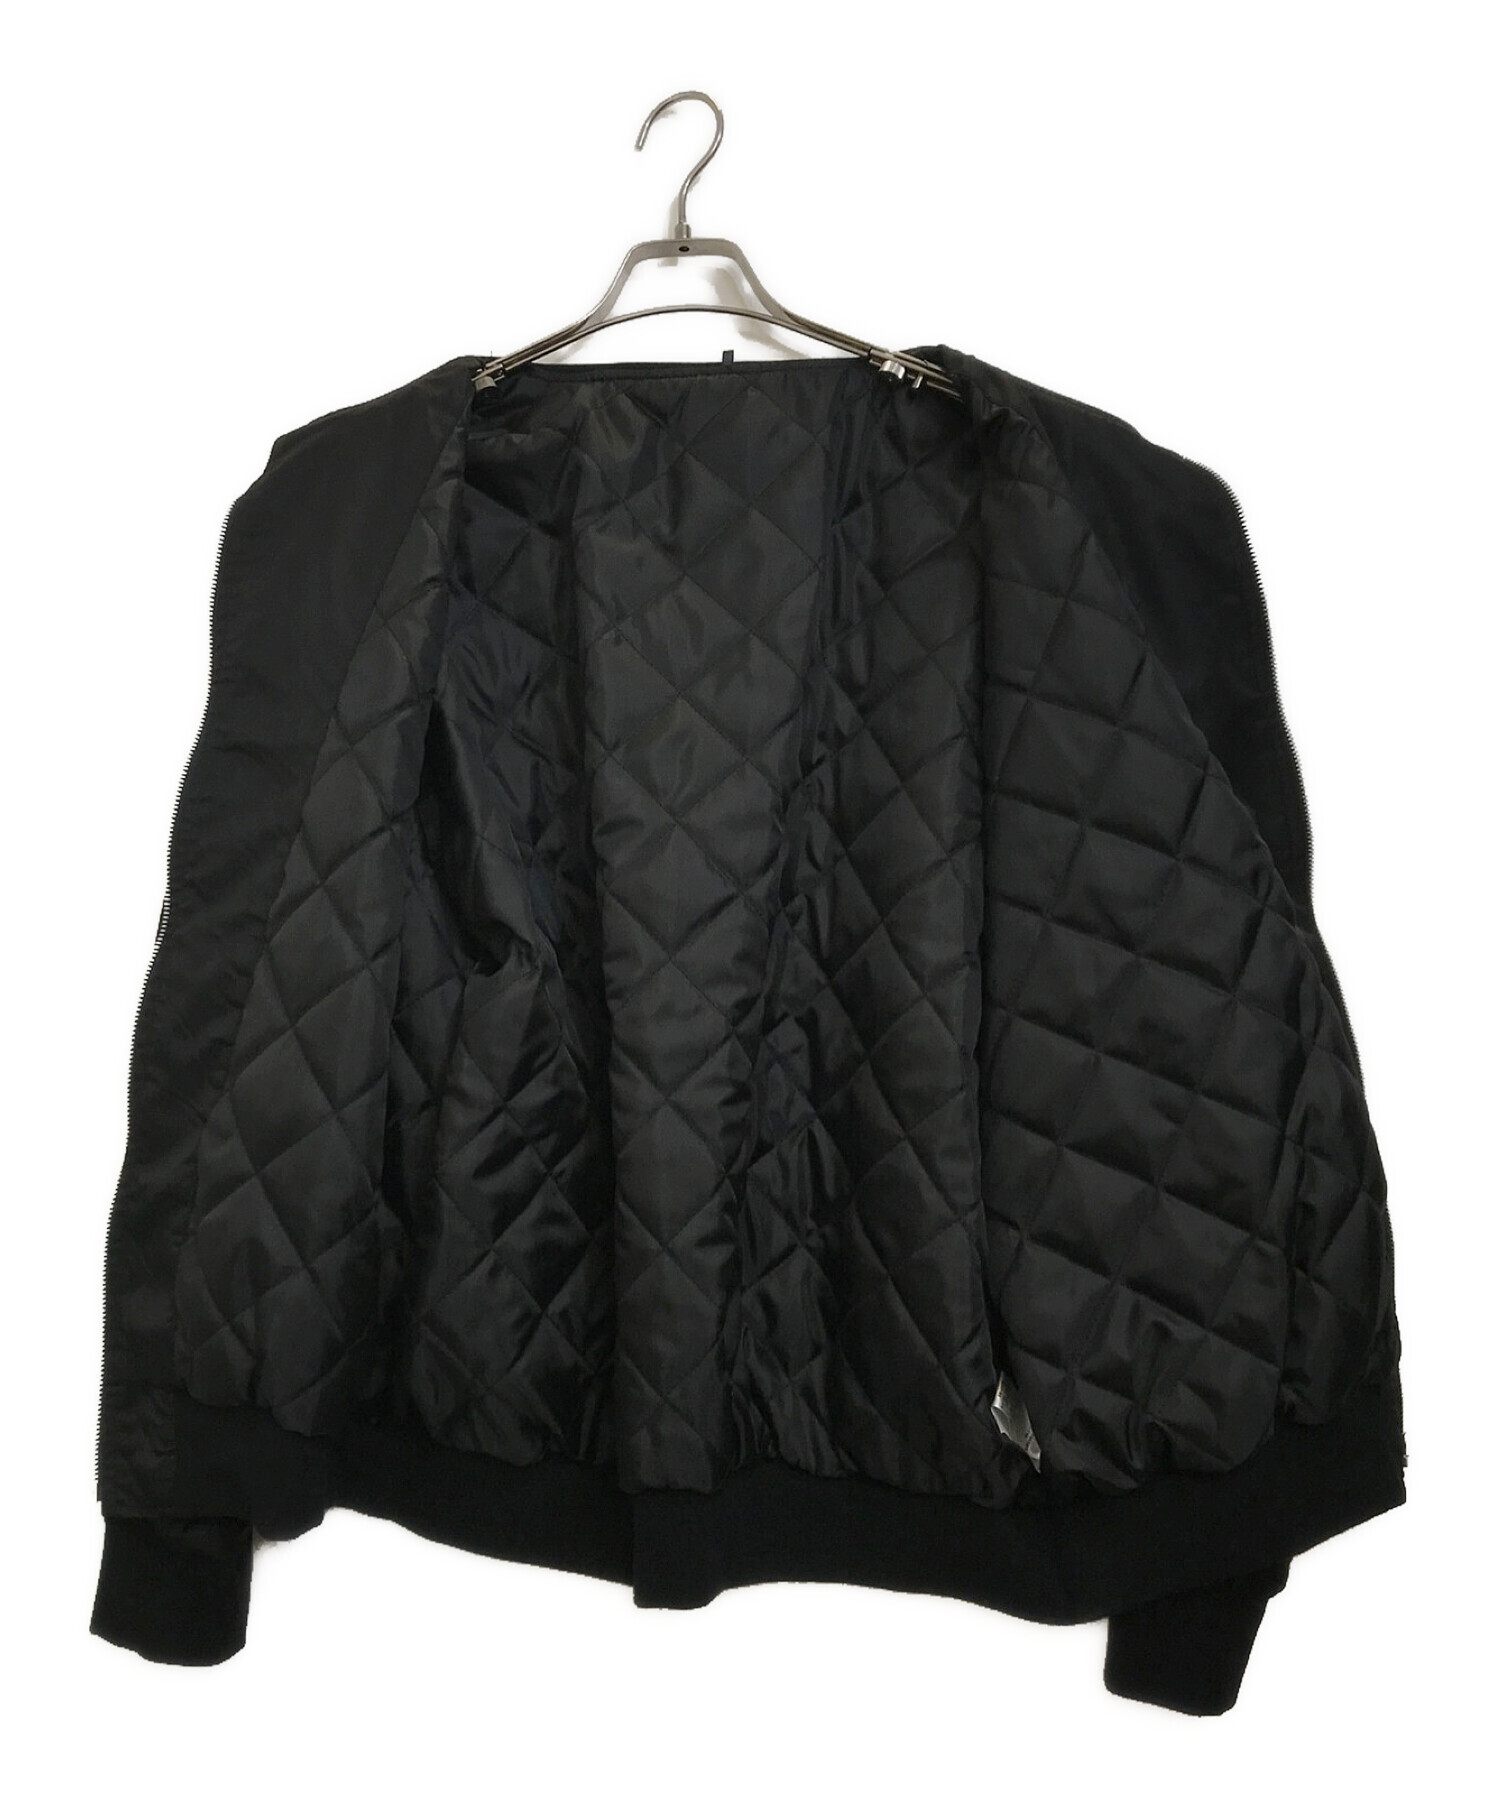 CRONOS (クロノス) MA-1ジャケット ブラック サイズ:38